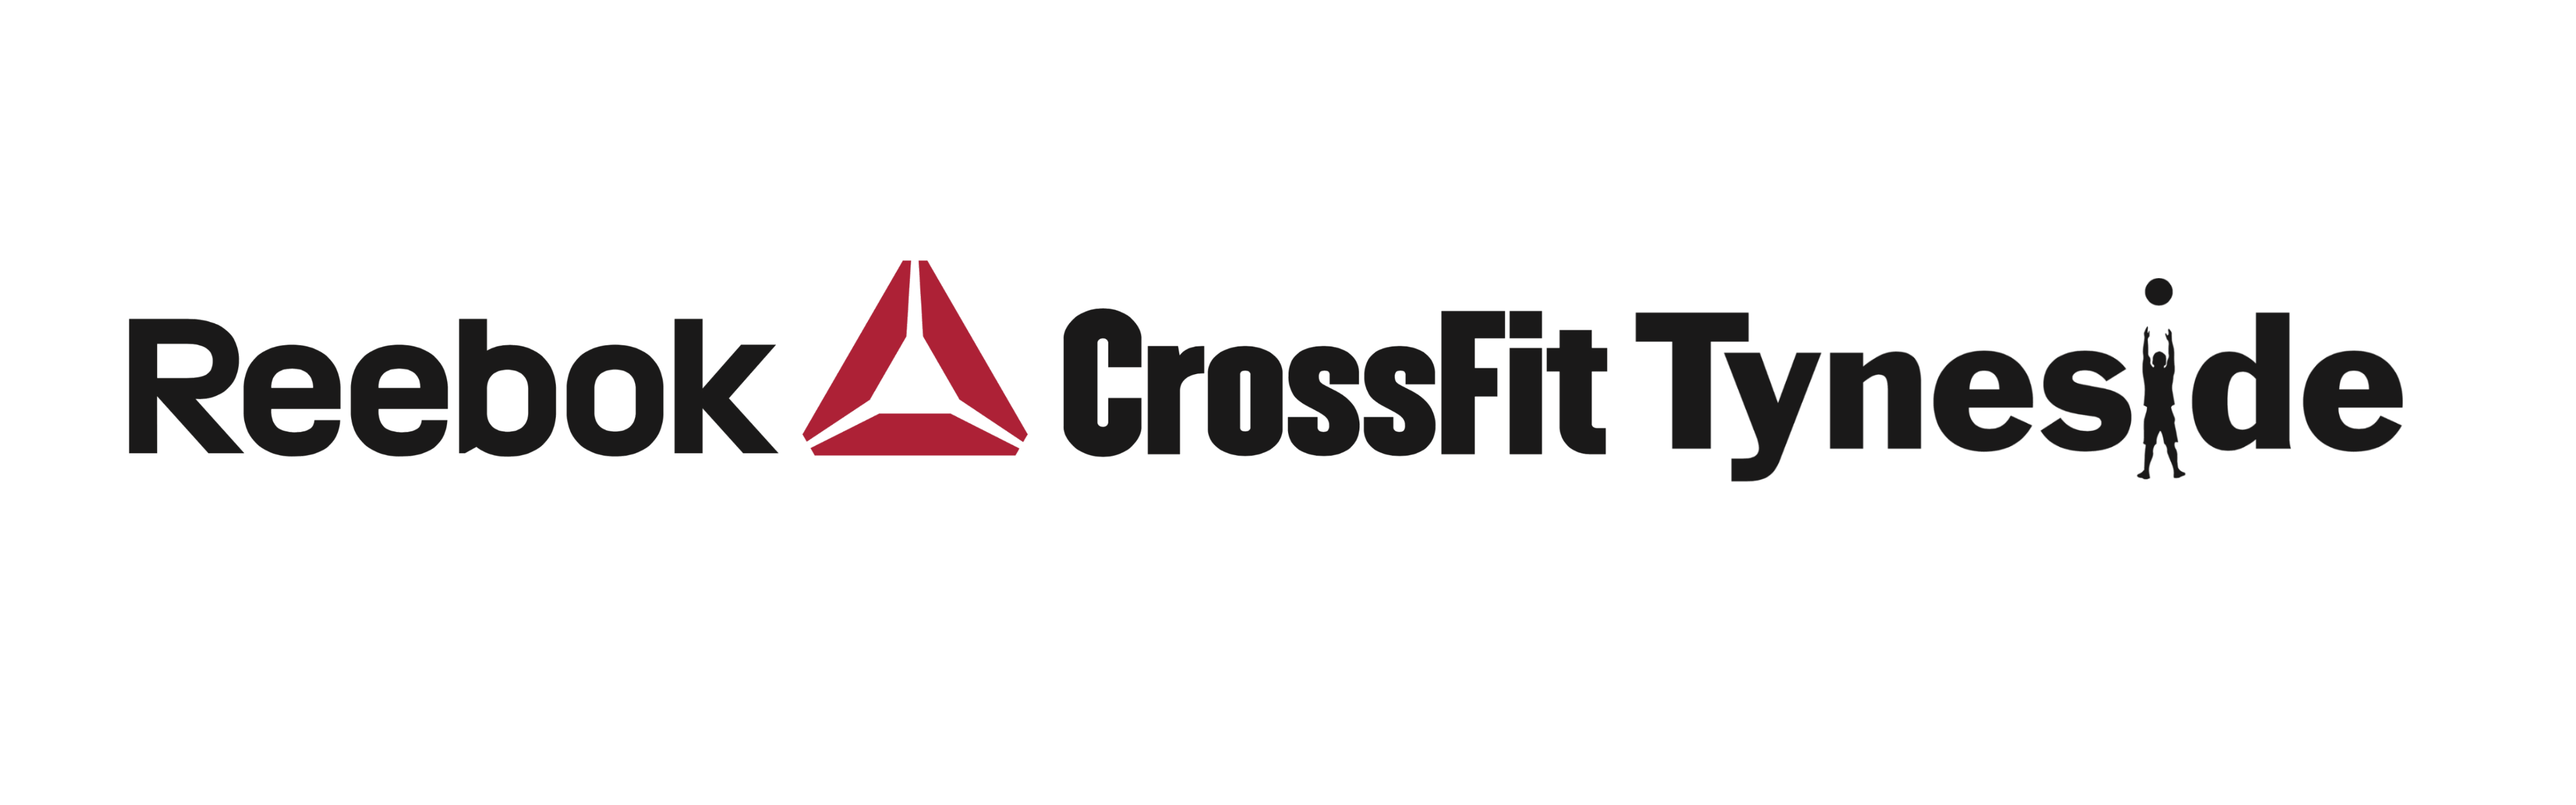 Reebok CrossFit Logo - Reebok CrossFit Tyneside | The Sport of Fitness